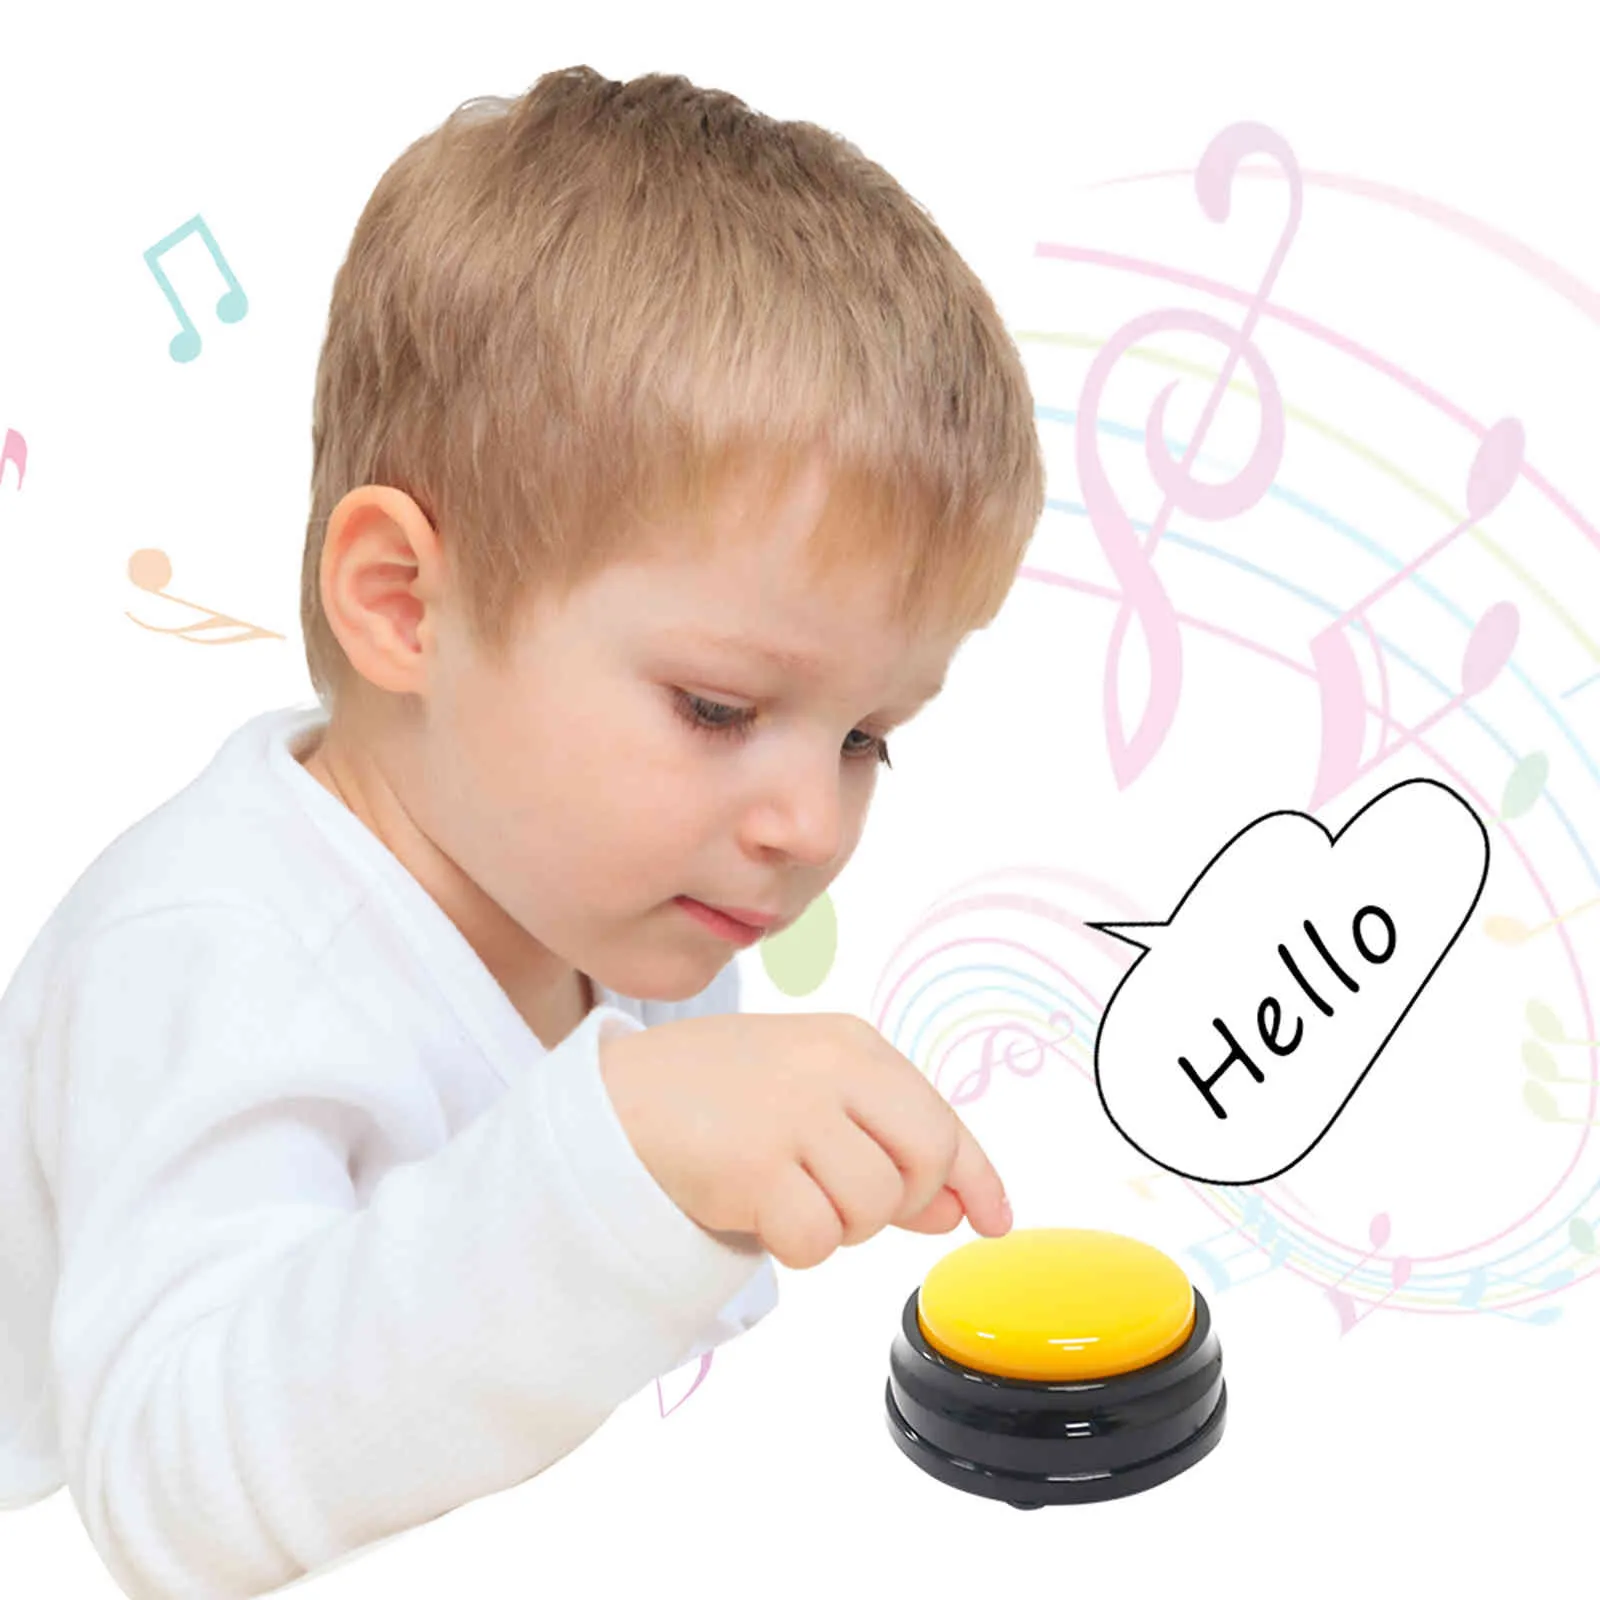 تسجيل زر الصوت صغير الحجم سهلة حمل الصوت للأطفال التفاعلية الأزرار